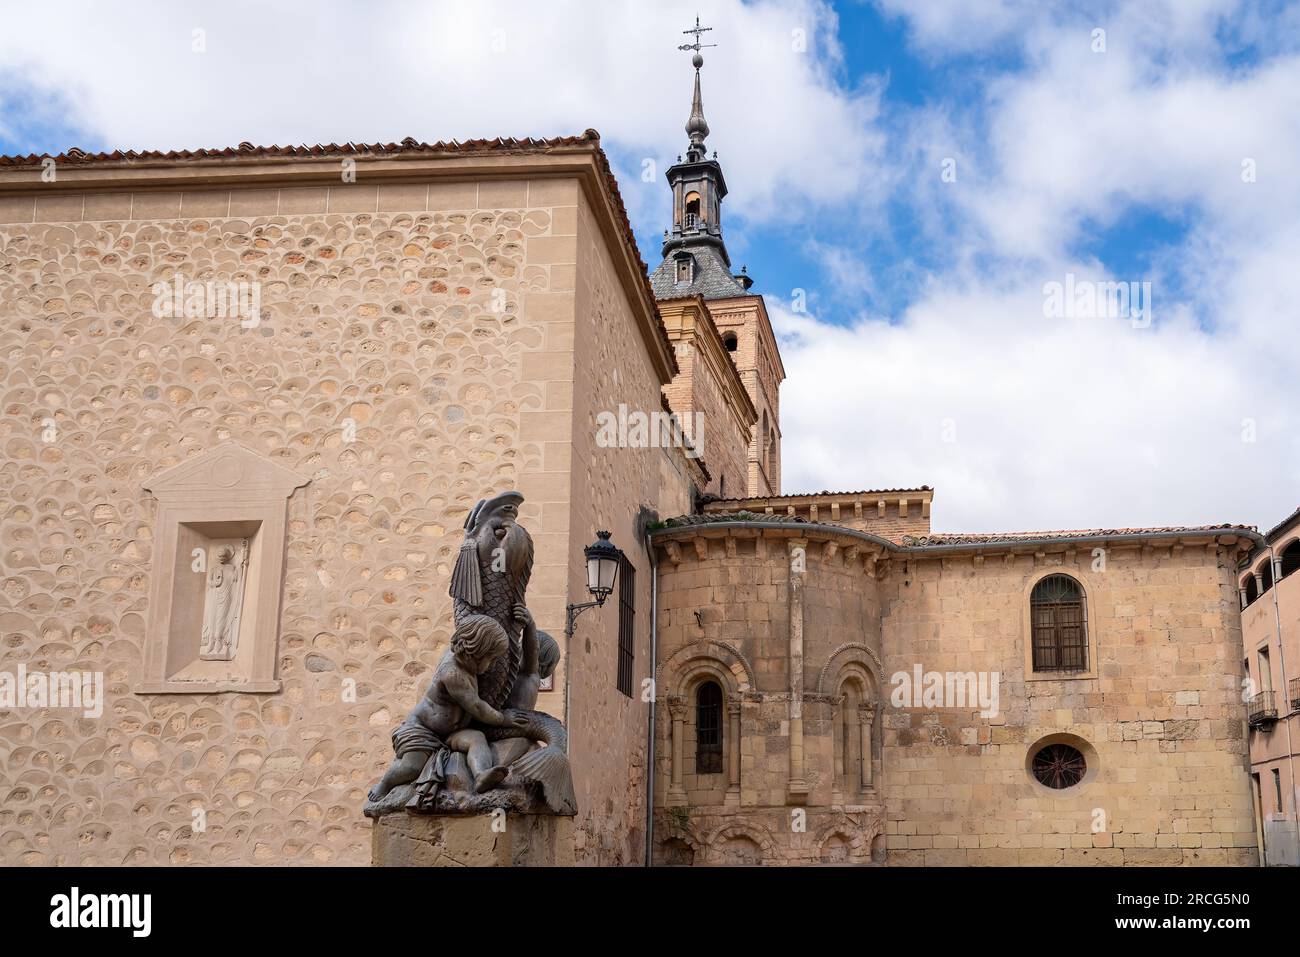 Lions Fountain (Fuente de Los Leones) and Church of San Martin at Plazuela de San Martin Square - Segovia, Spain Stock Photo